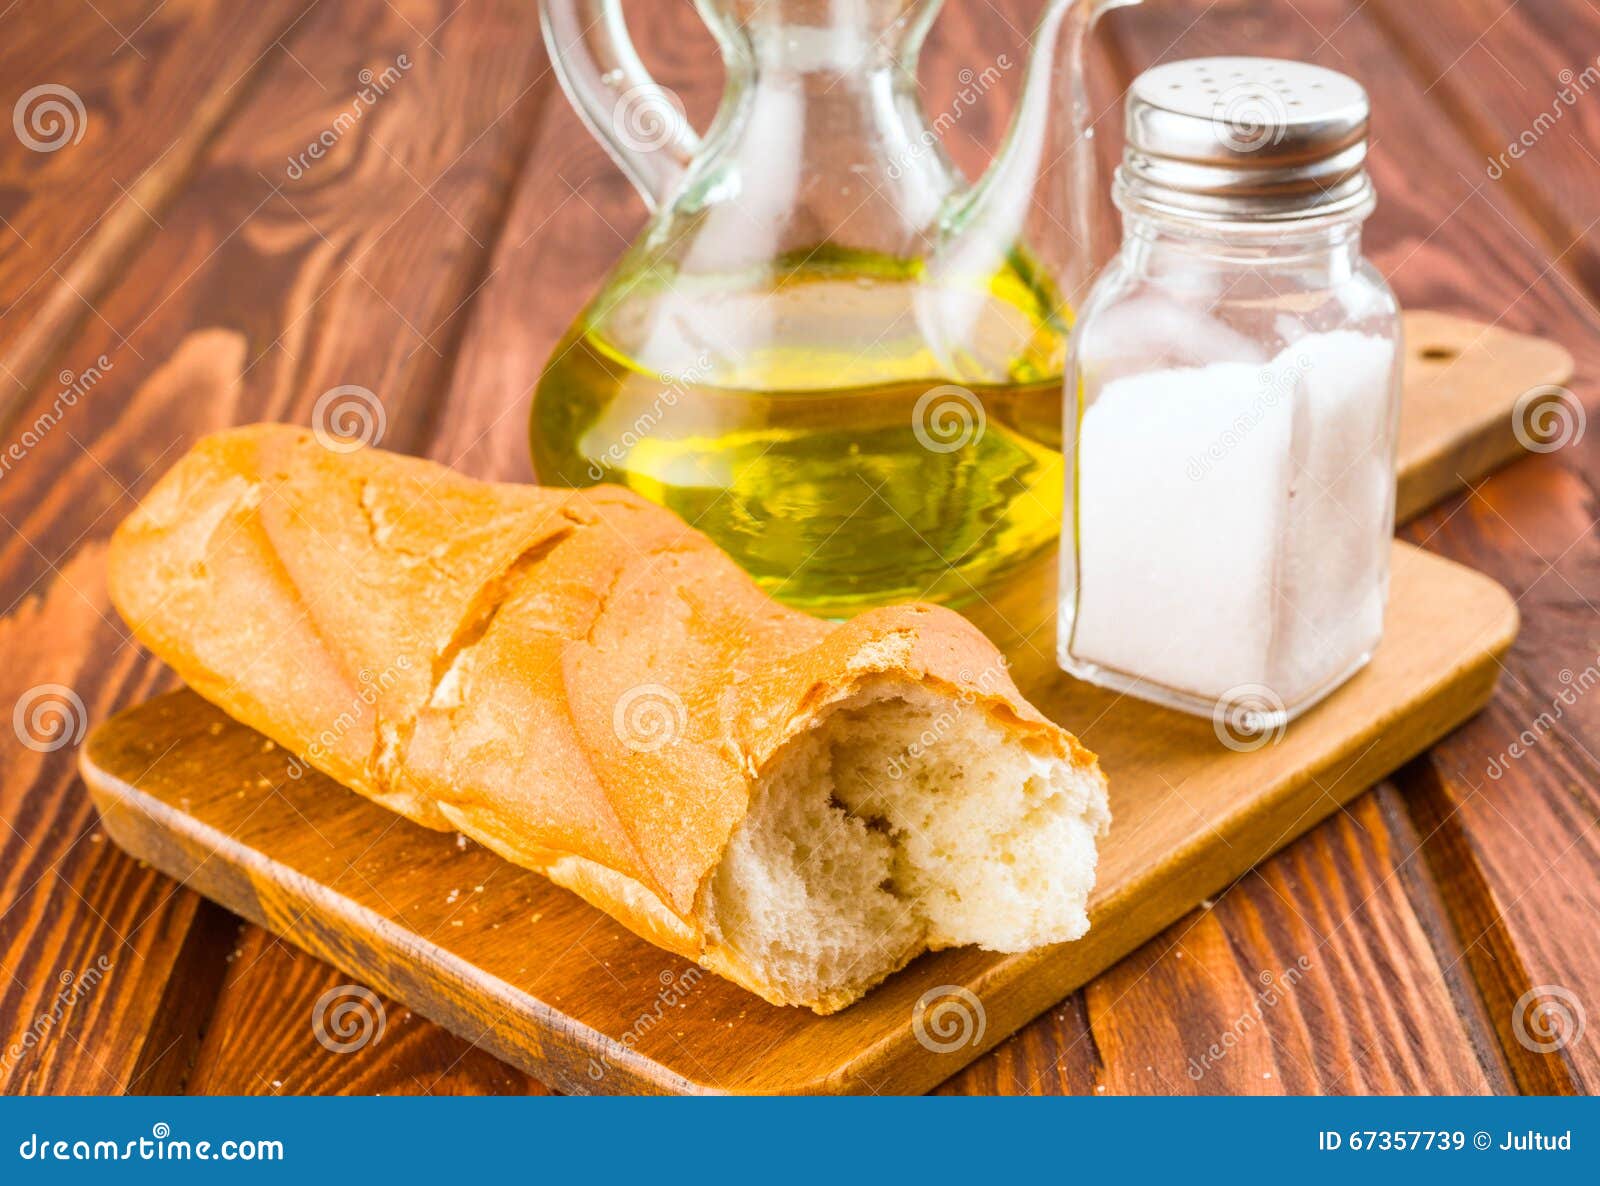 Spanisches Brot Mit Ol Und Salz Auf Dem Holzernen Brett Lokalisiert Stockbild Bild Von Ruttler Szene 67357739